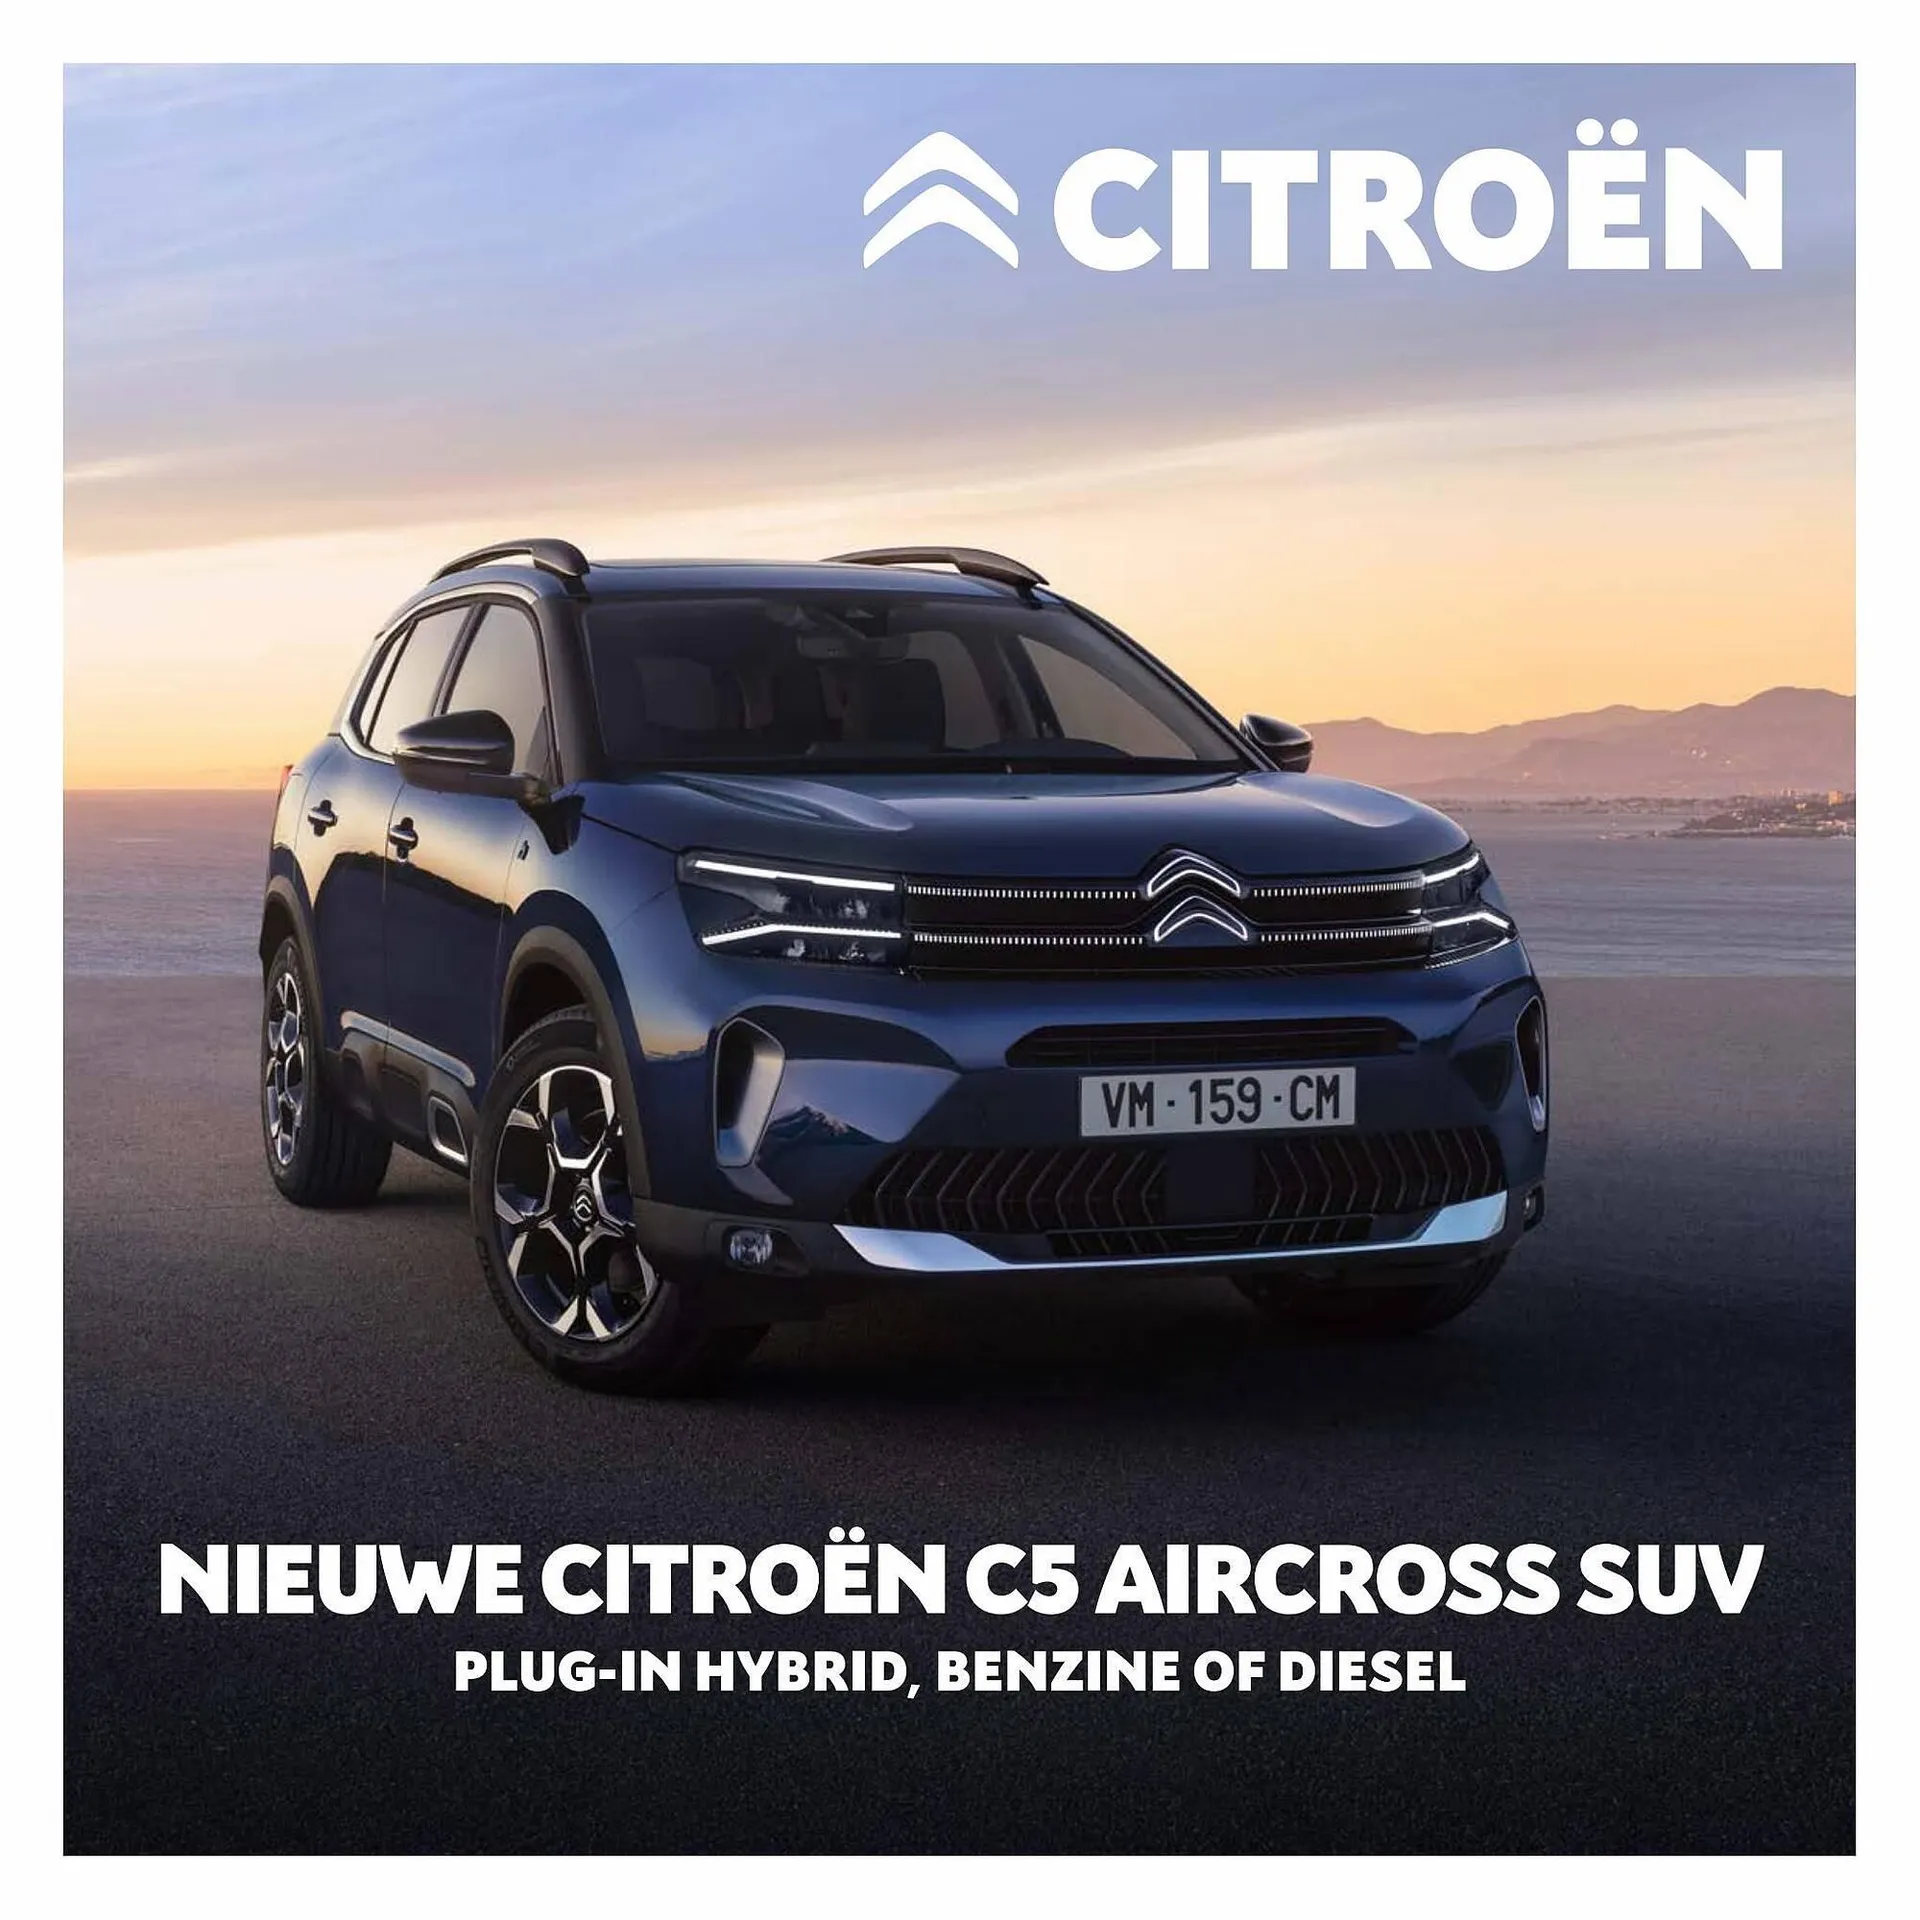 Citroën folder